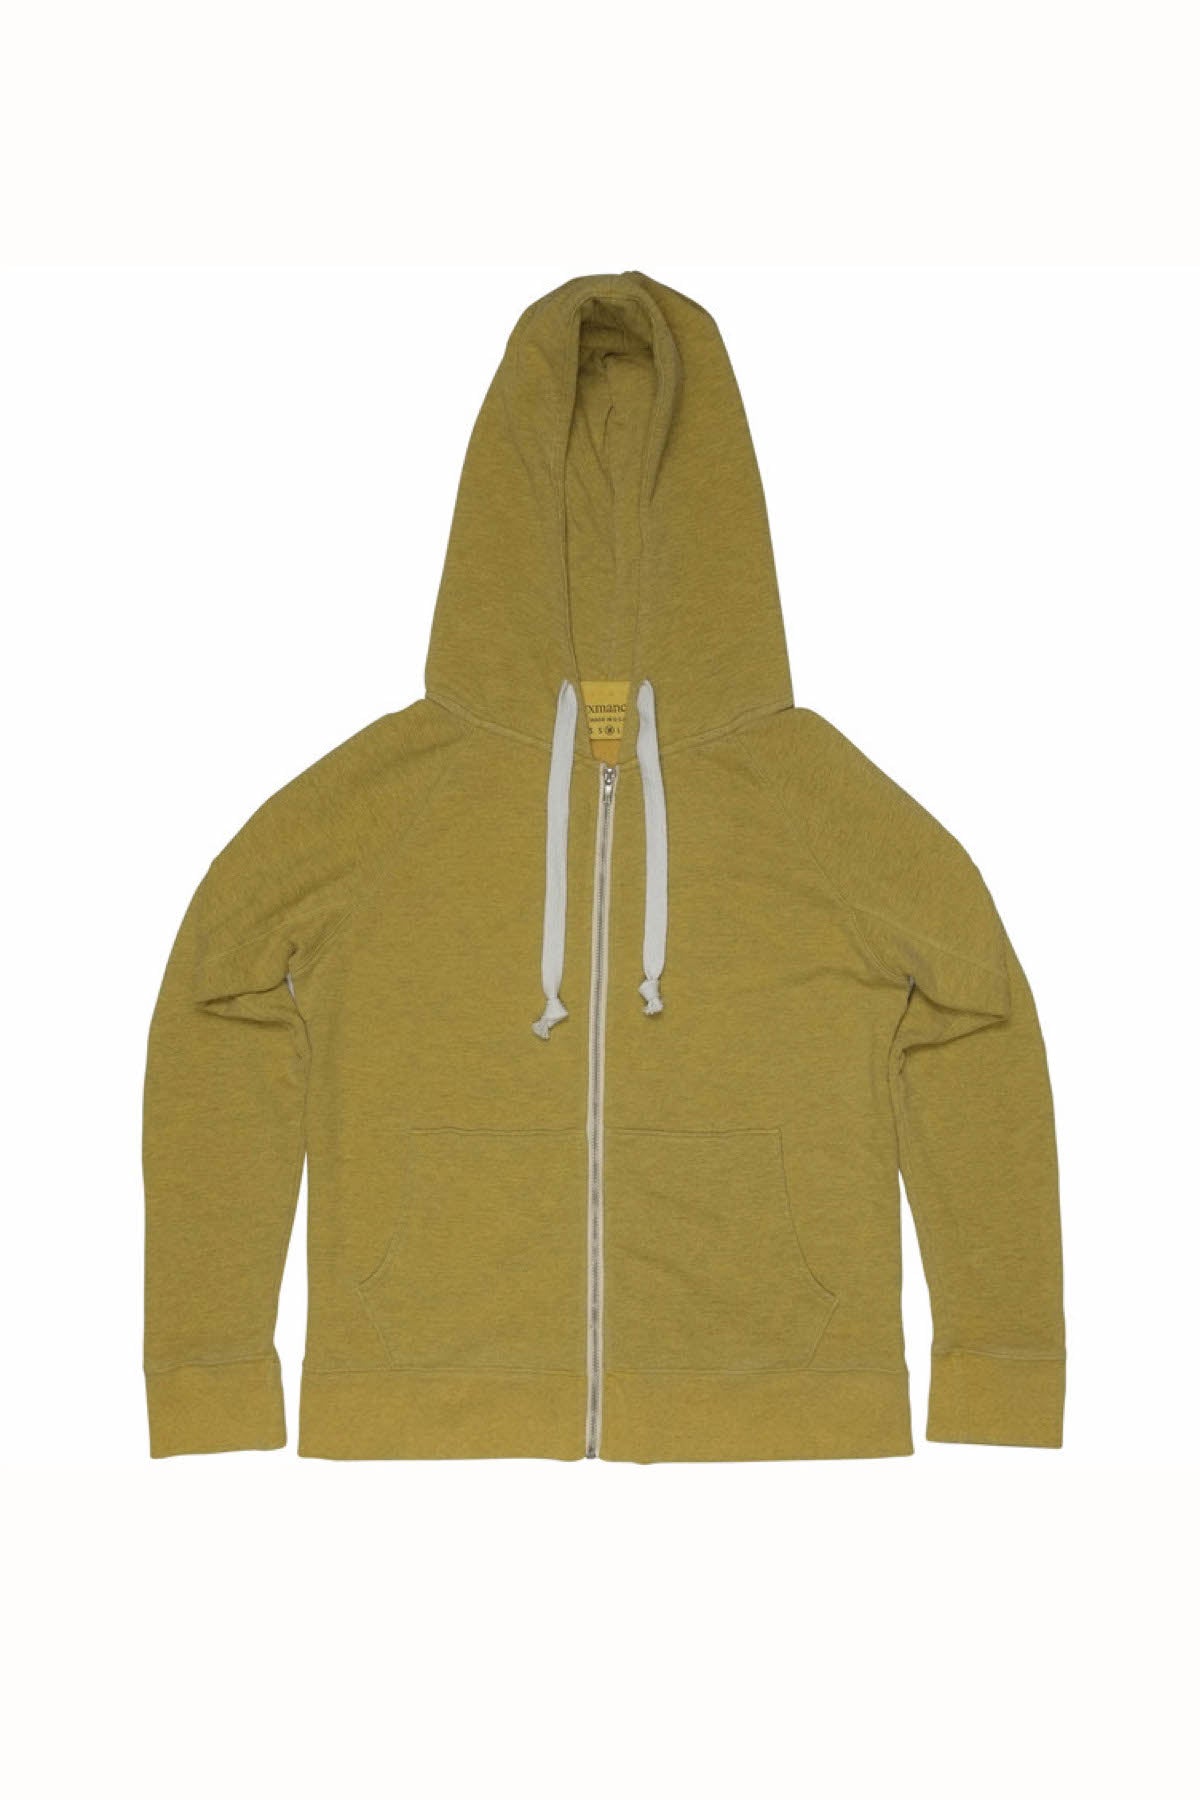 Rxmance Unisex Gold Hooded Zip Sweatshirt